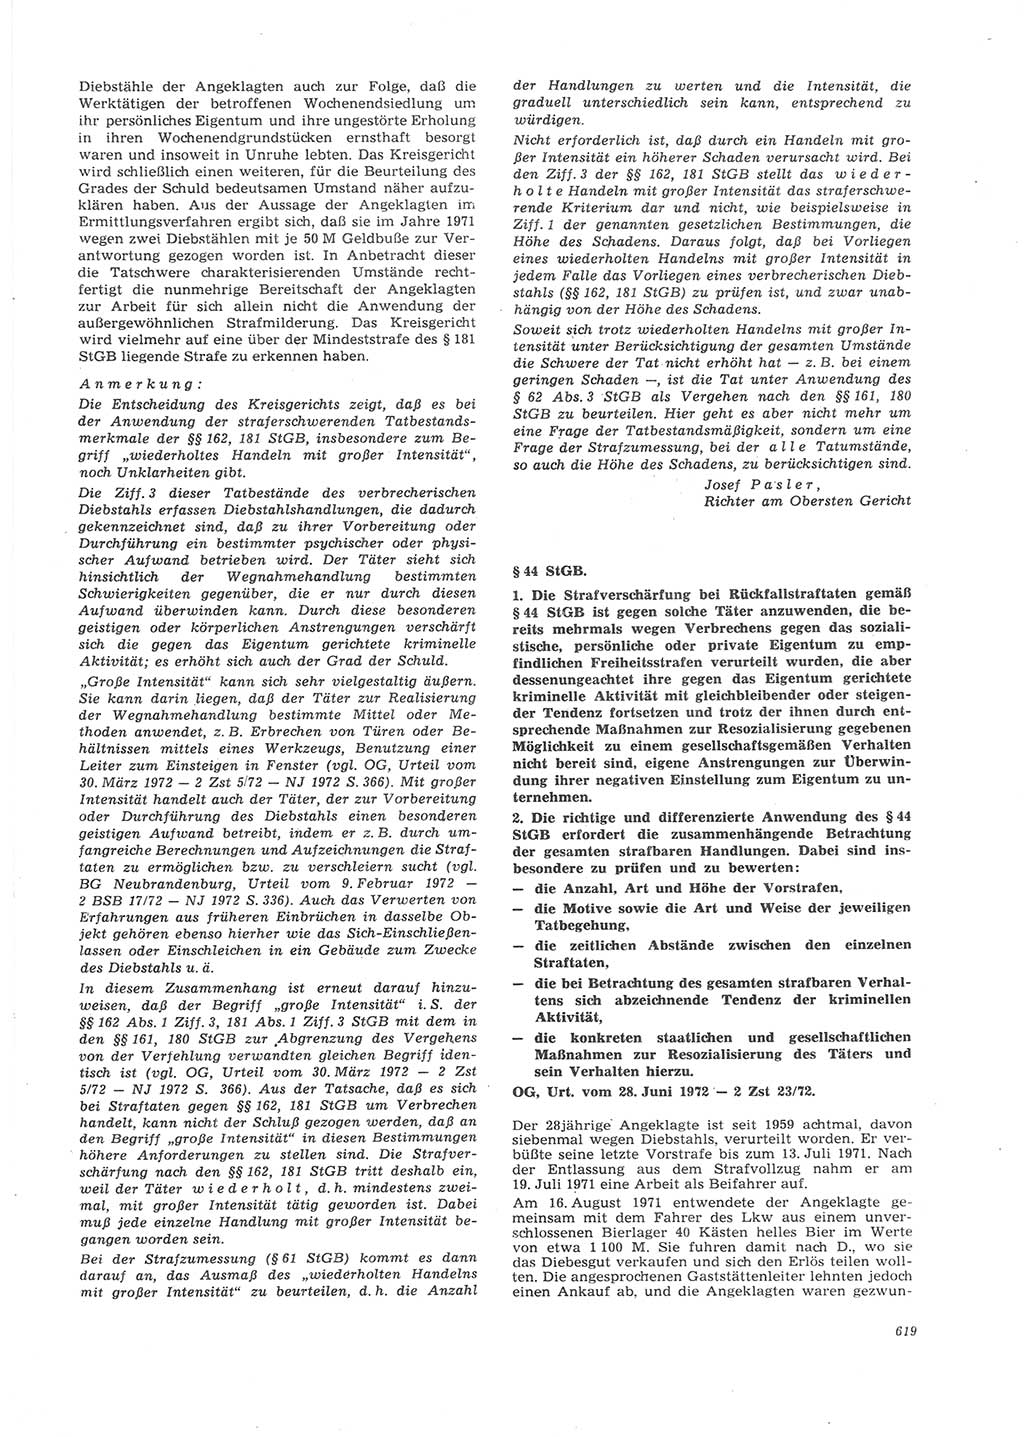 Neue Justiz (NJ), Zeitschrift für Recht und Rechtswissenschaft [Deutsche Demokratische Republik (DDR)], 26. Jahrgang 1972, Seite 619 (NJ DDR 1972, S. 619)